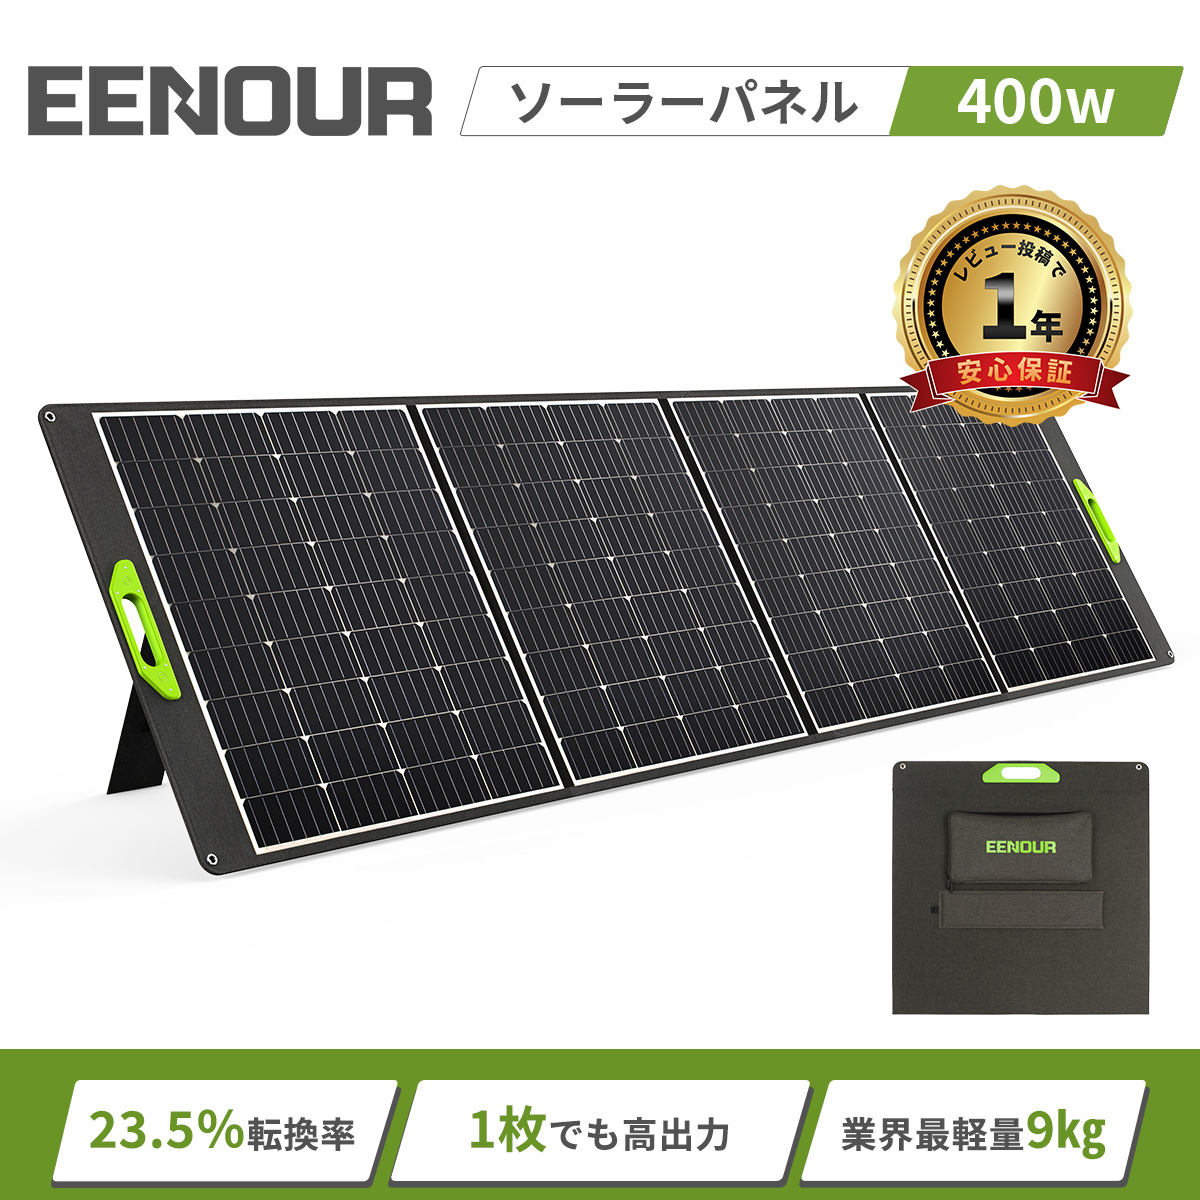 EENOUR ソーラーパネル60w 急速充電 ソーラーバッテリー充電器 太陽光 